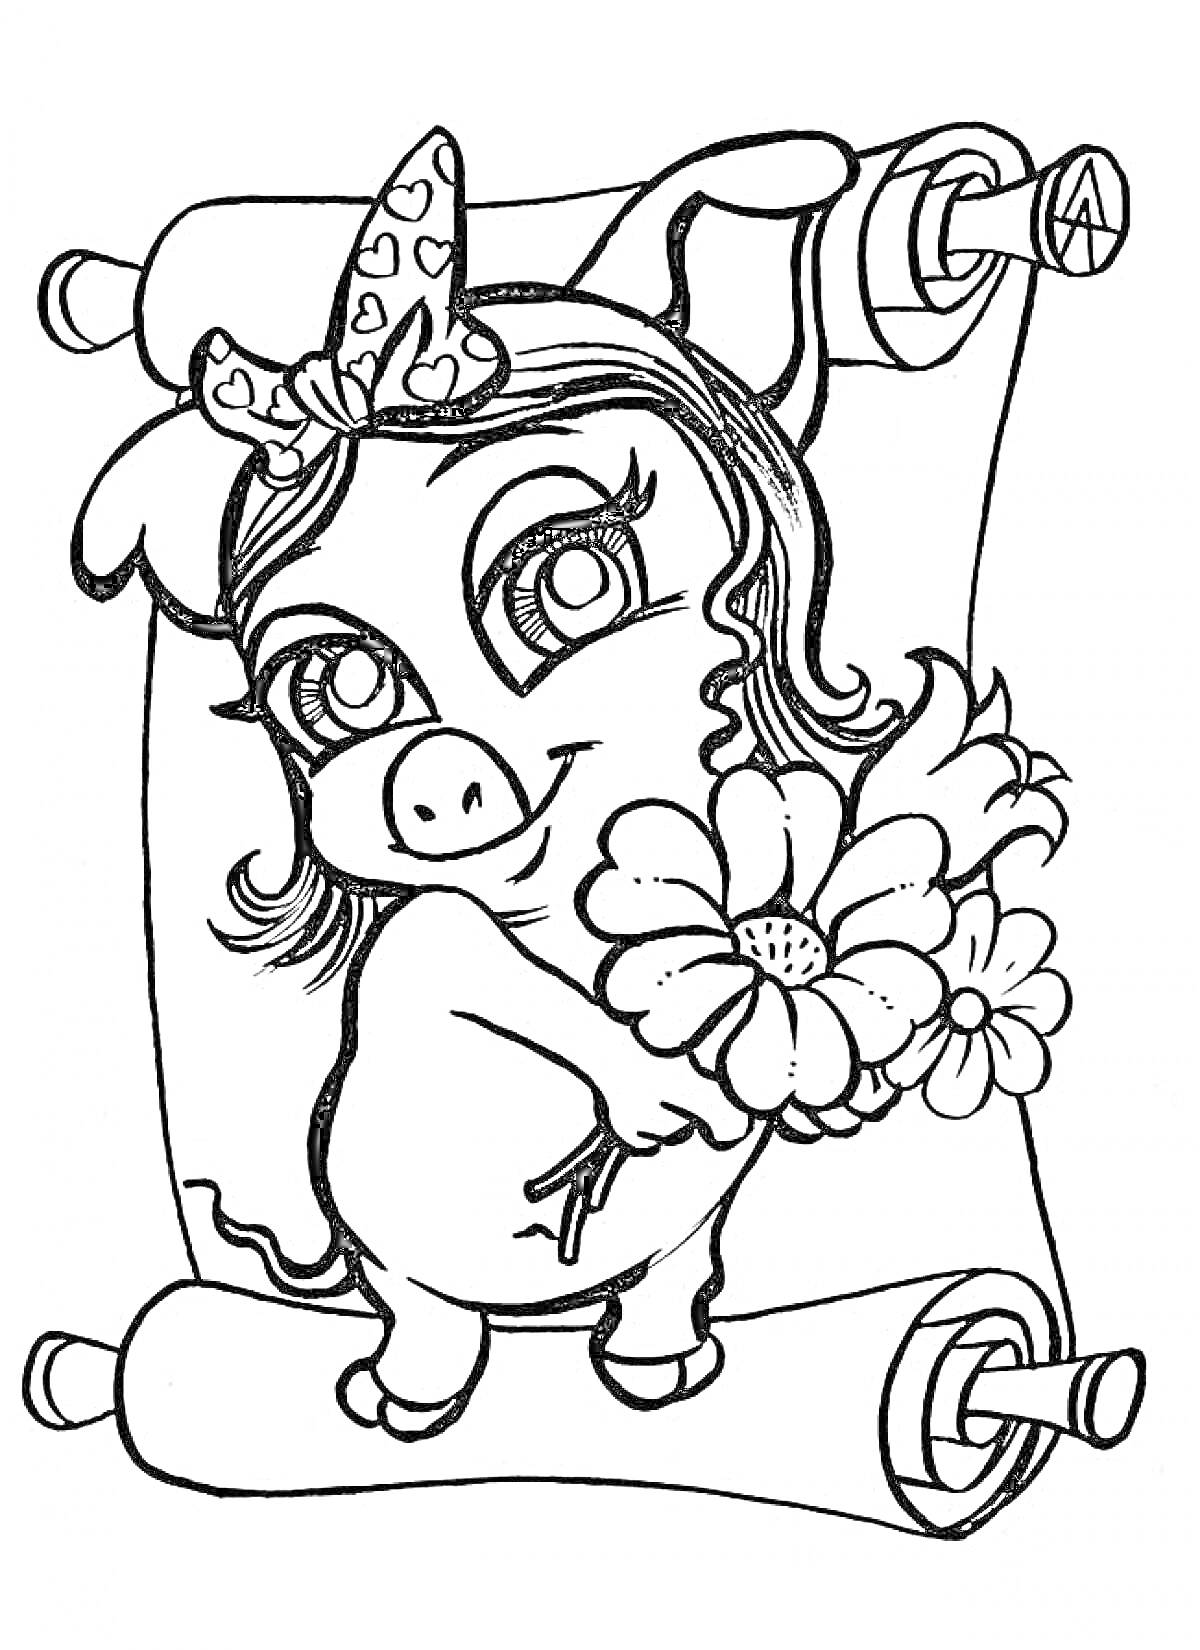 Свинья с бантом держит цветы на фоне свитка